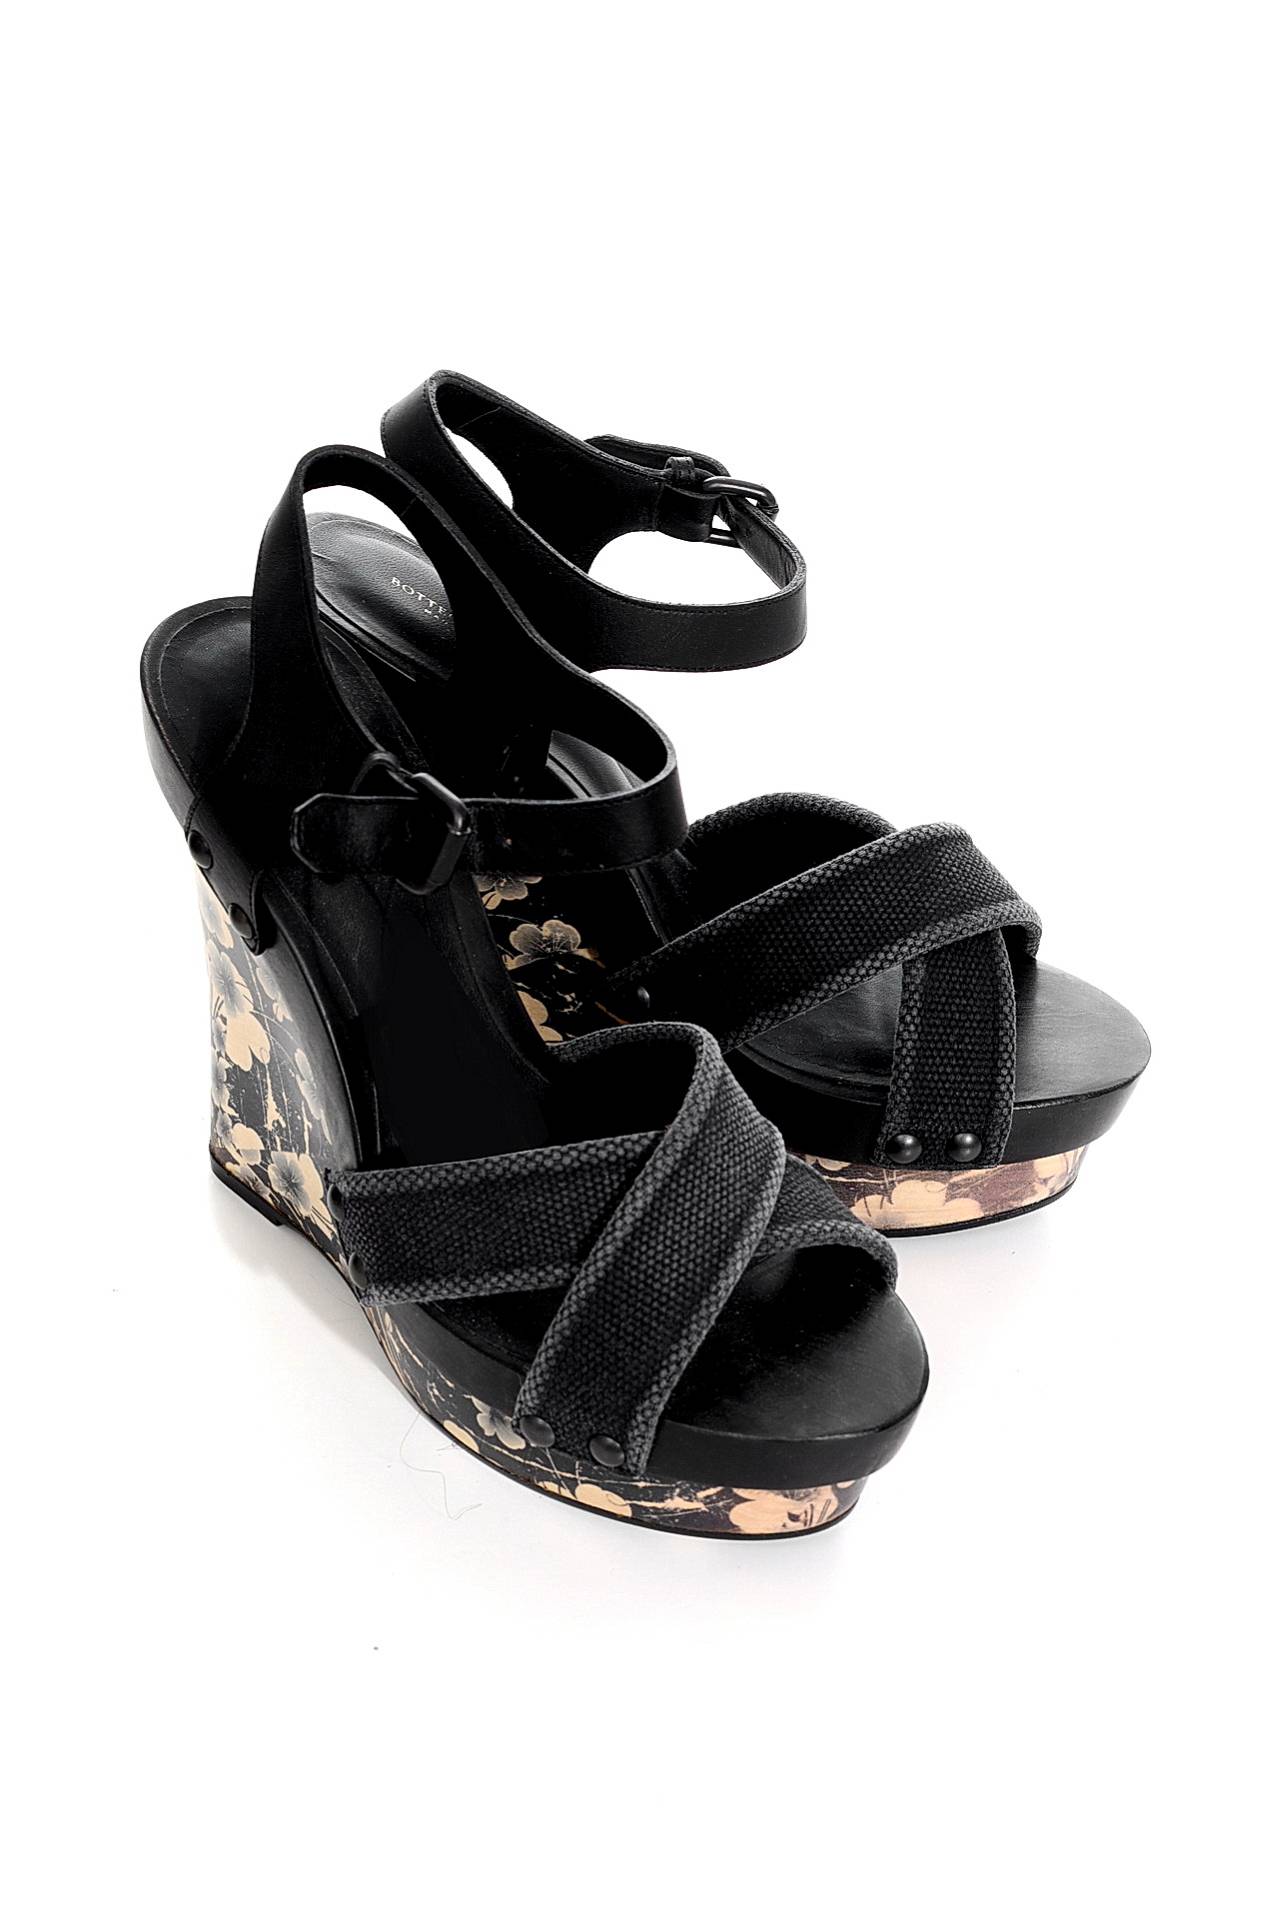 Обувь женская Босоножки BOTTEGA VENETA (282221VT992/12.1). Купить за 18360 руб.